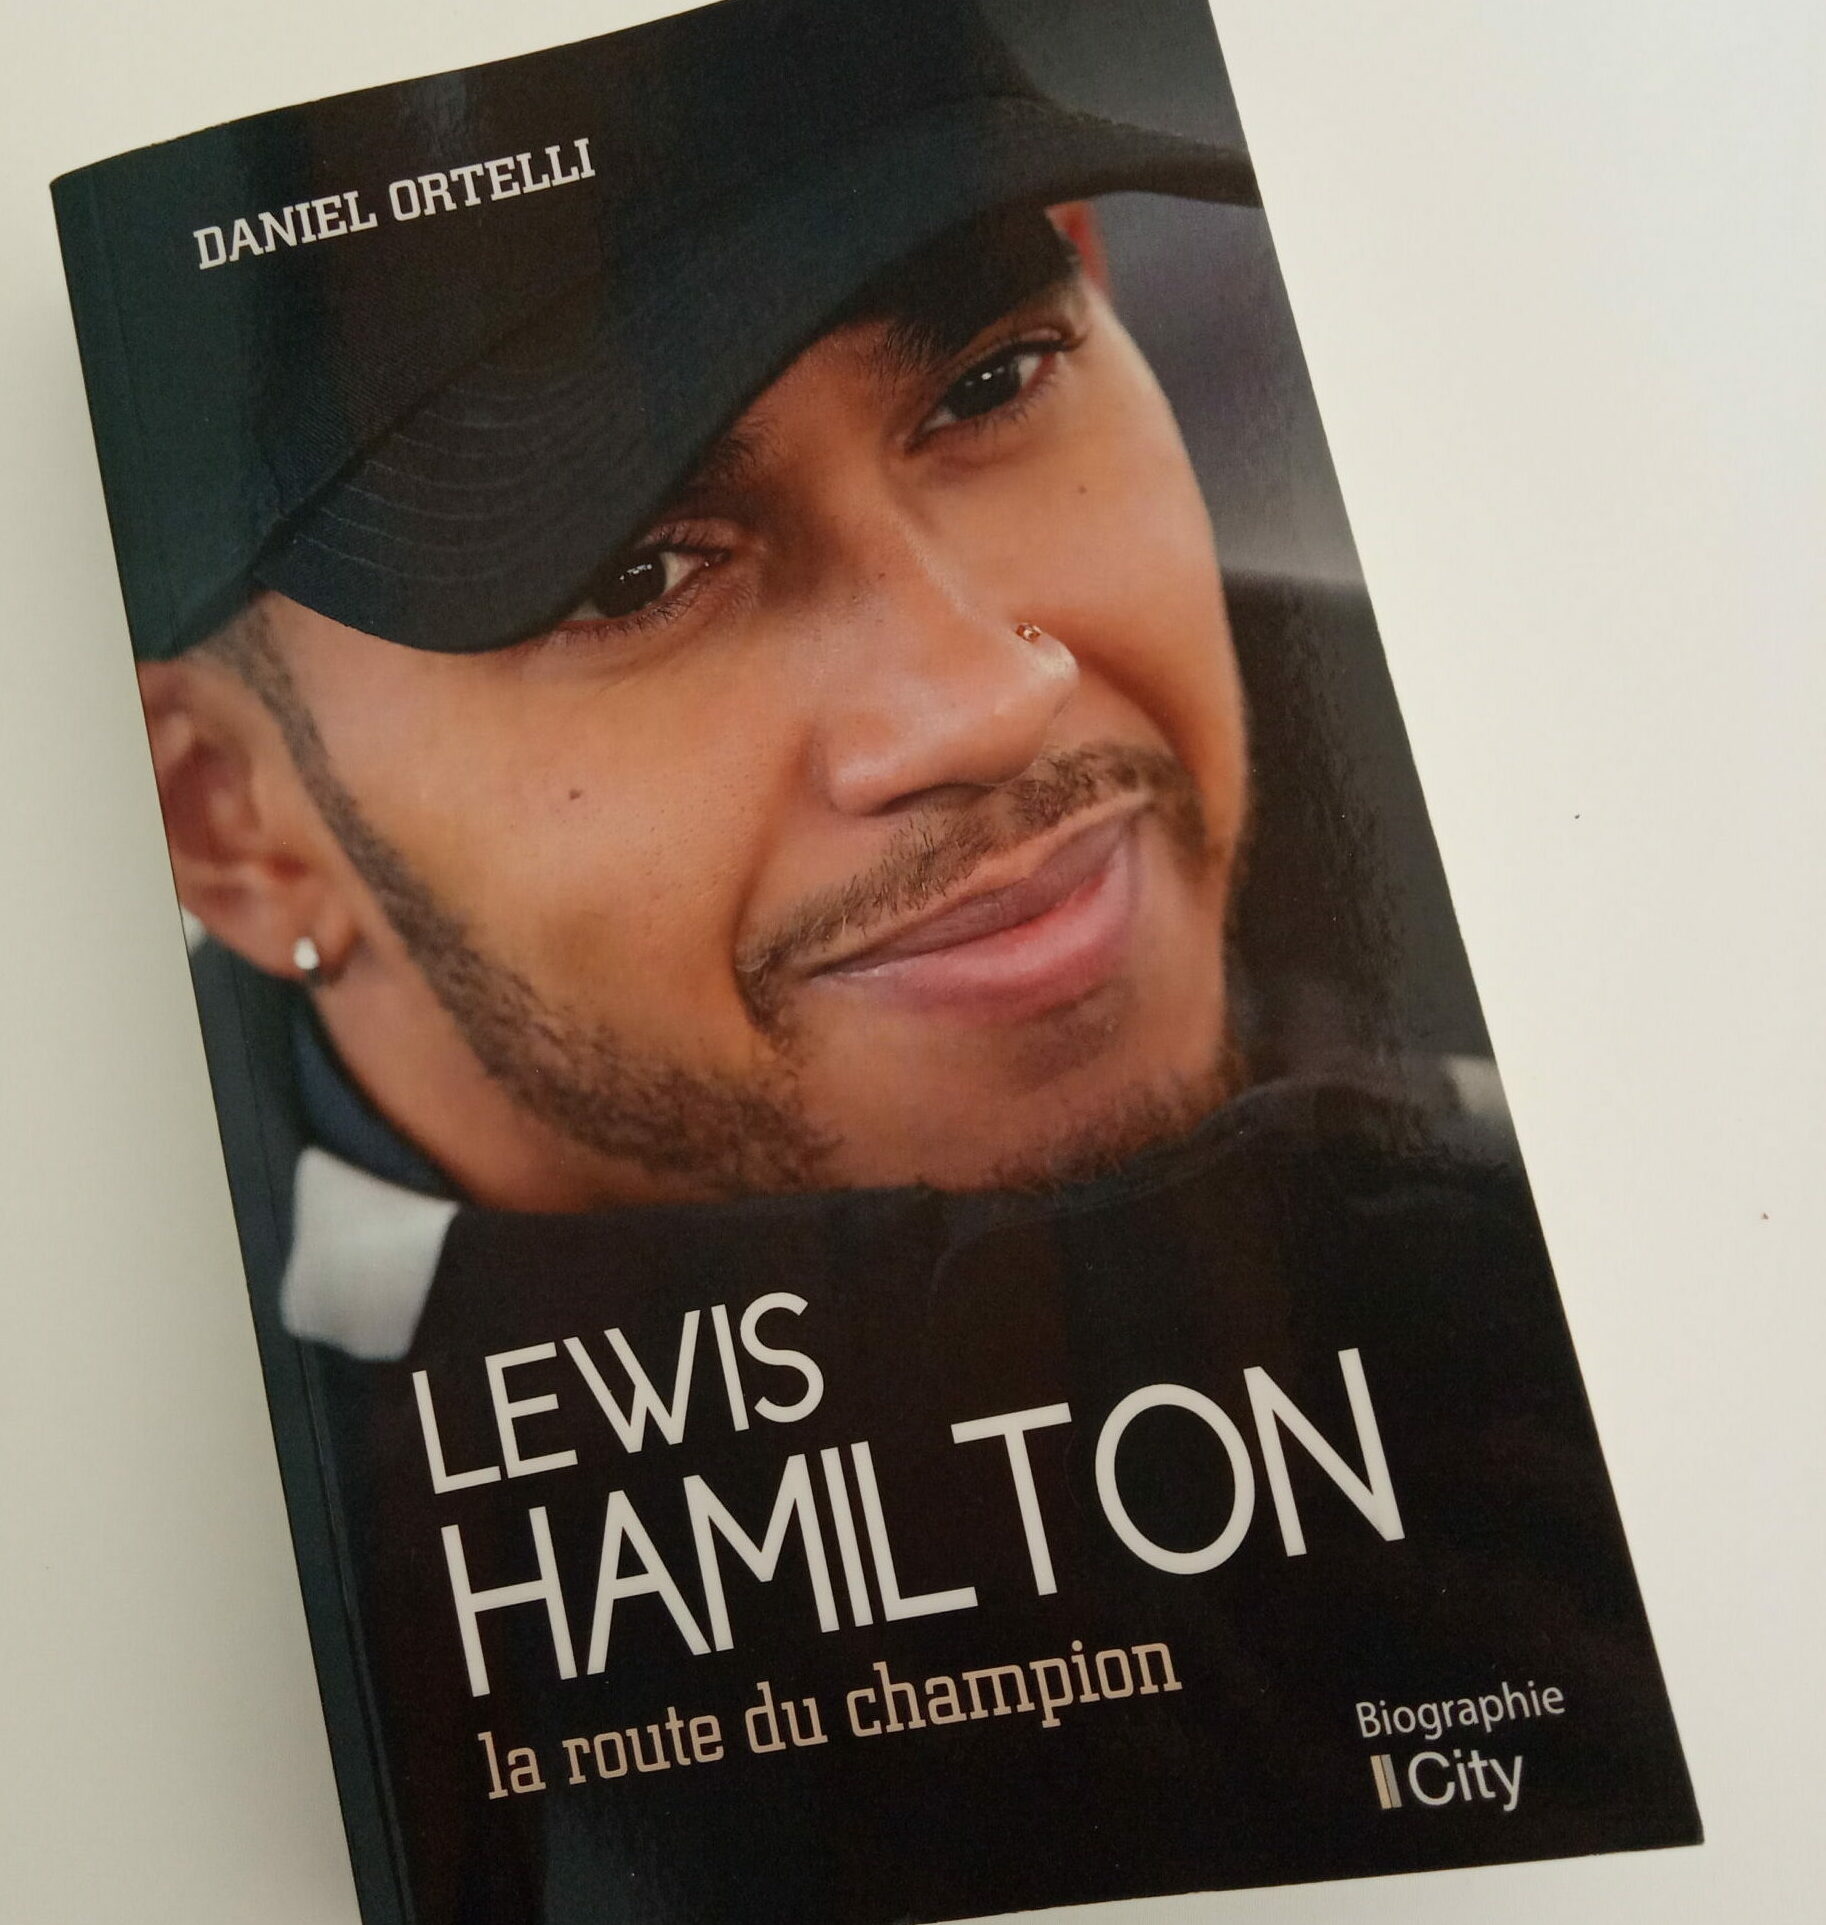 F1 - "Lewis Hamilton, la route du champion" de Daniel Ortelli